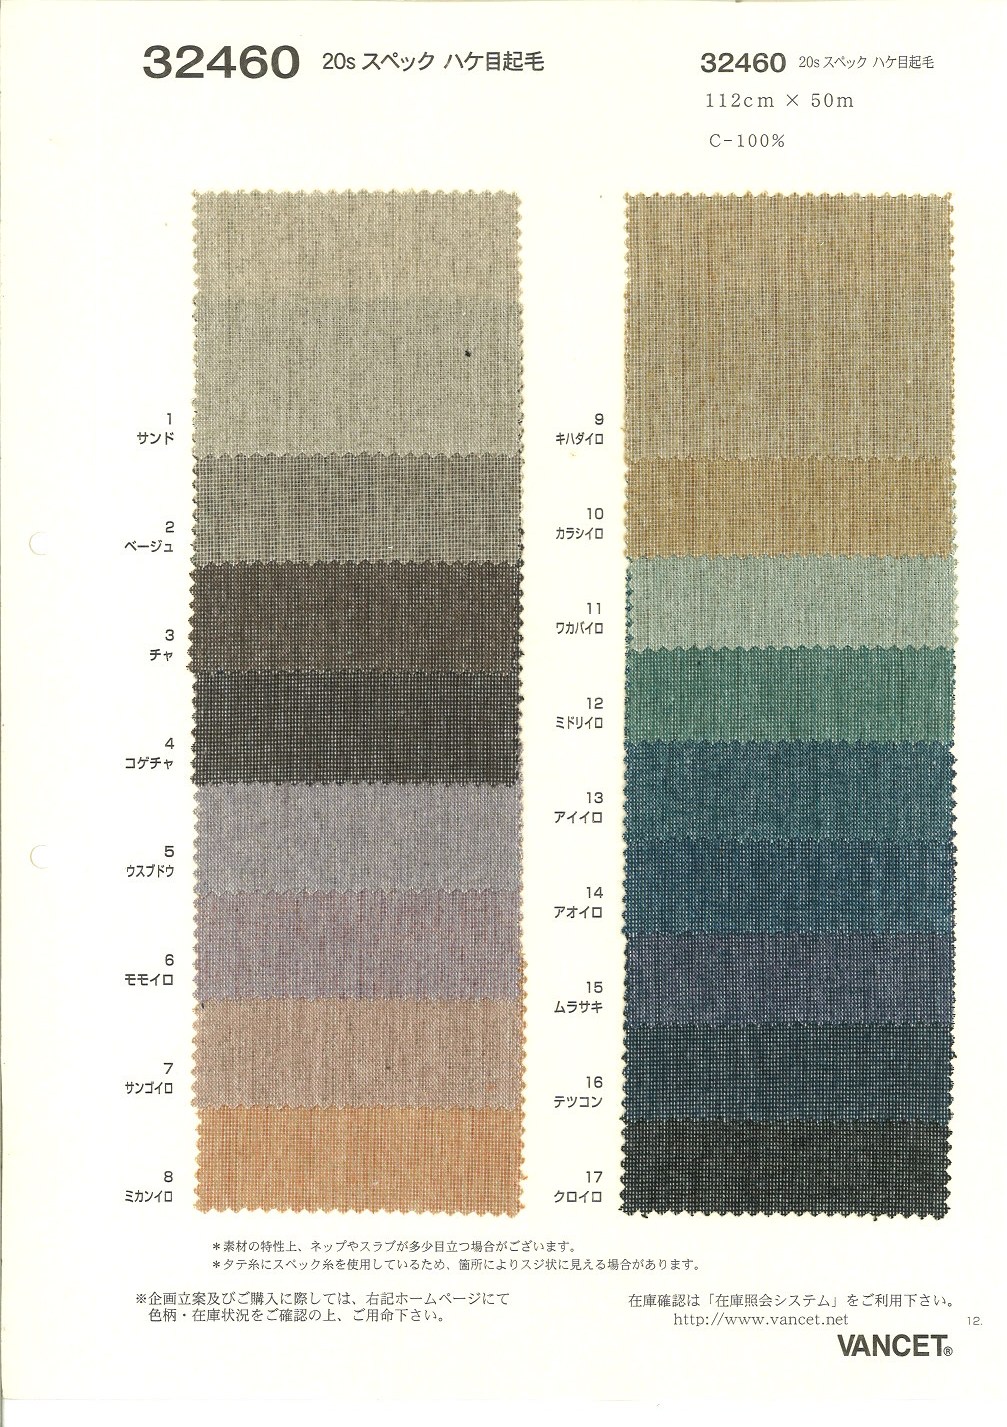 32460 Fuzzy De Especificación De 20 Hilos[Fabrica Textil] VANCET